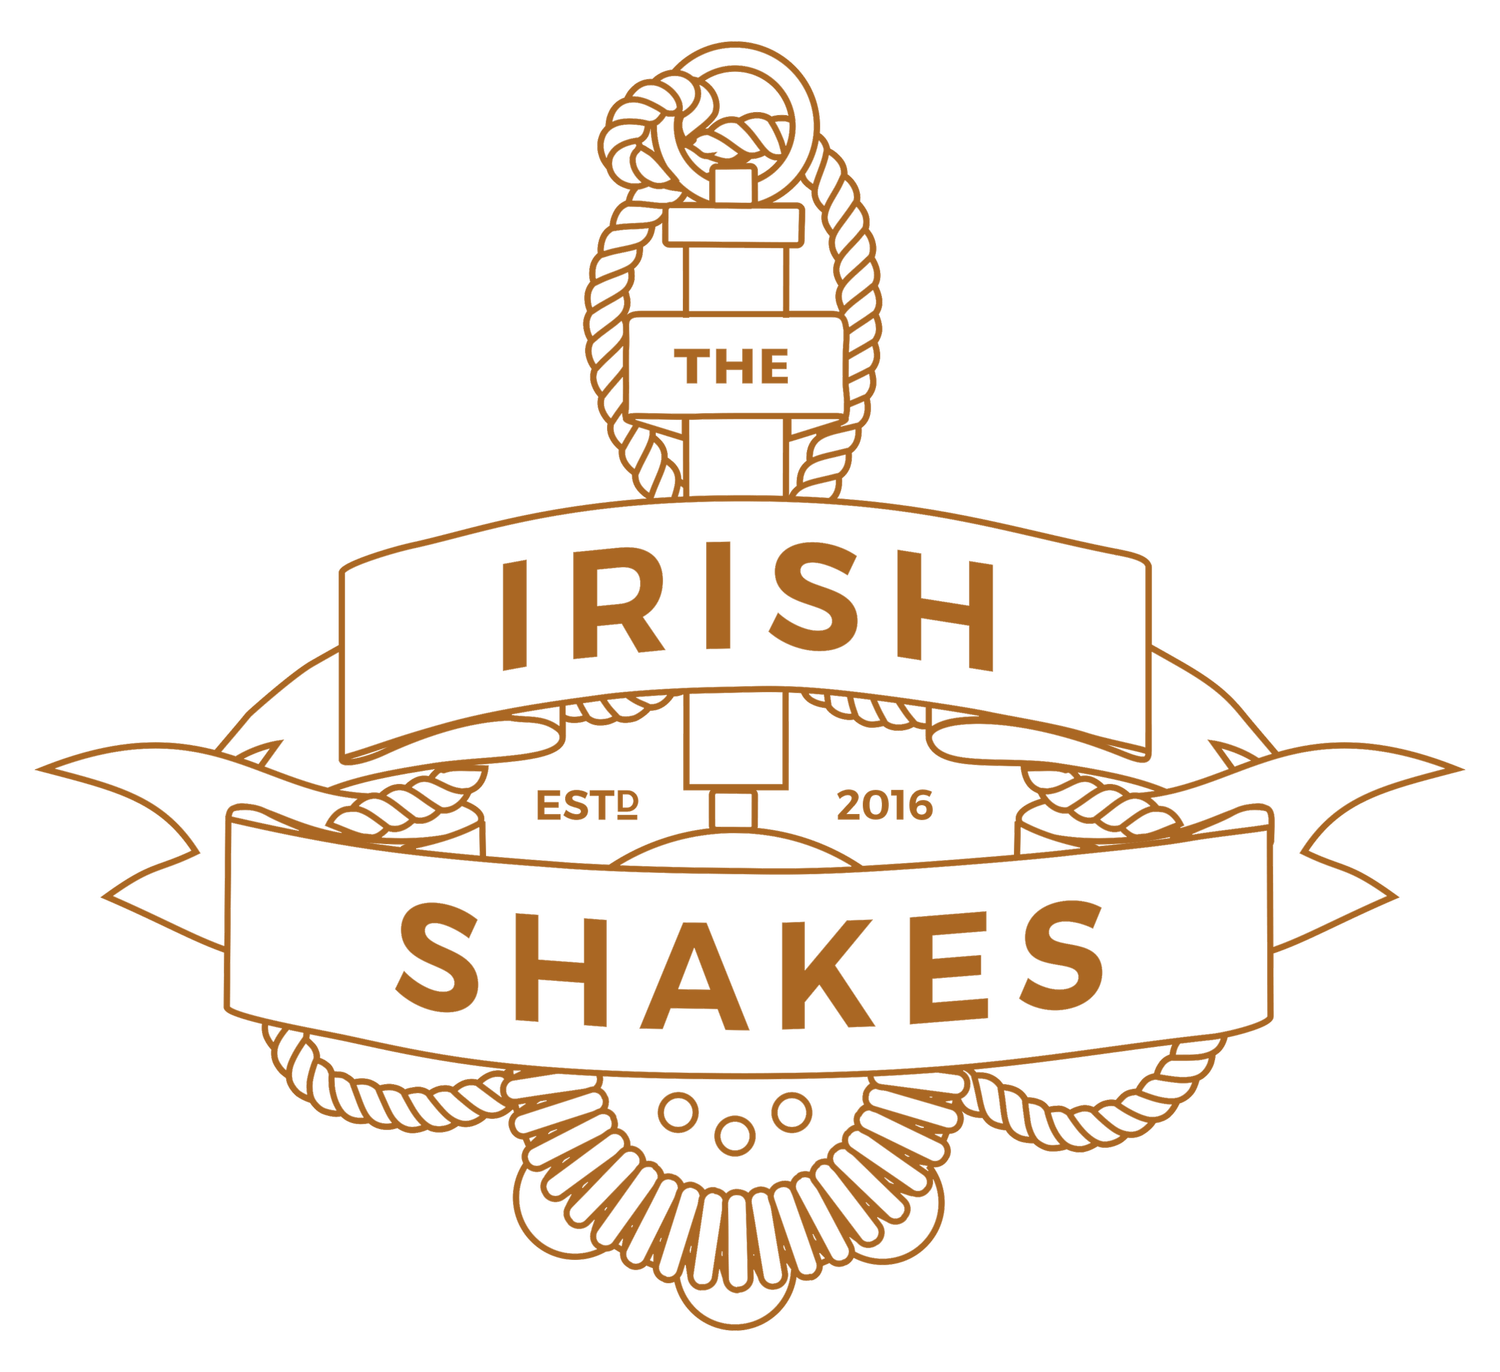 The Irish Shakes